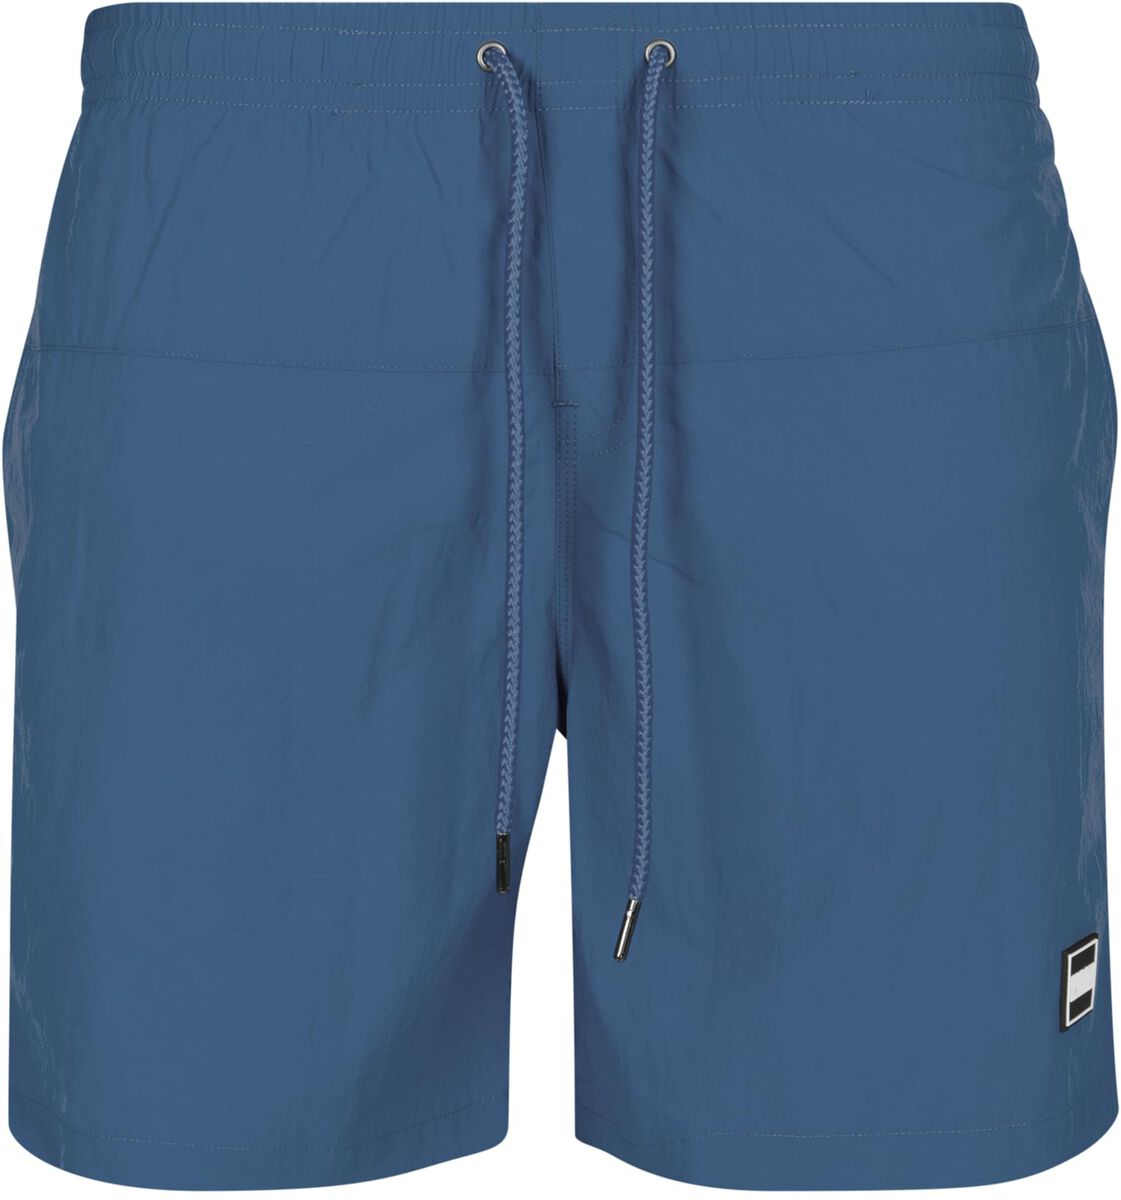 Urban Classics Block Swim Shorts Badeshort blau in XL